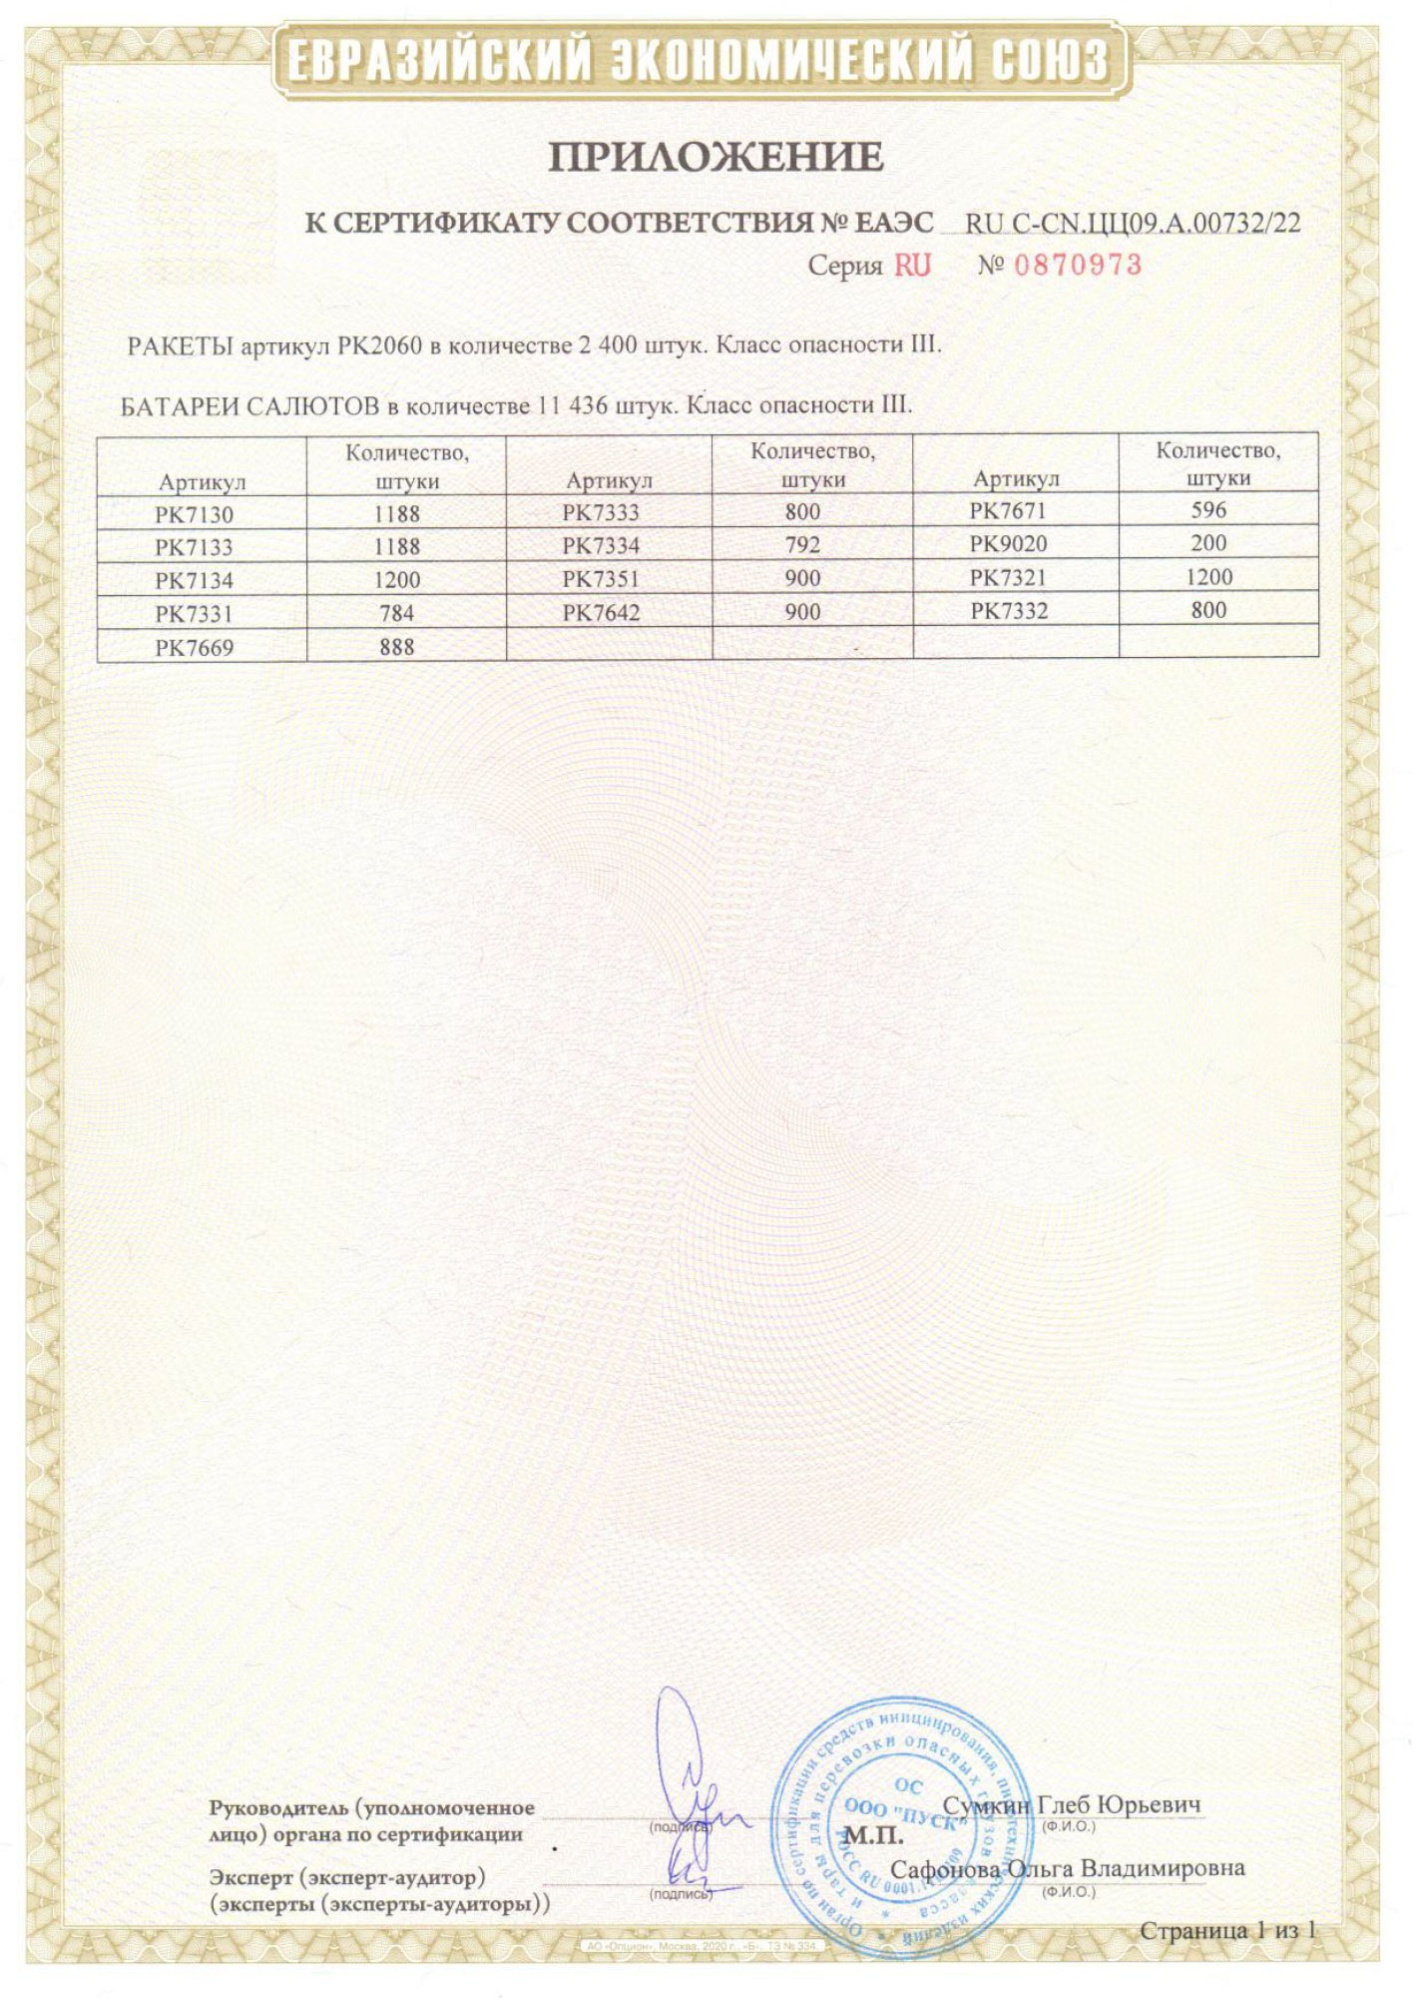 Приложение к сертификату Самогонщики 1,25" х 36  (РК7671)